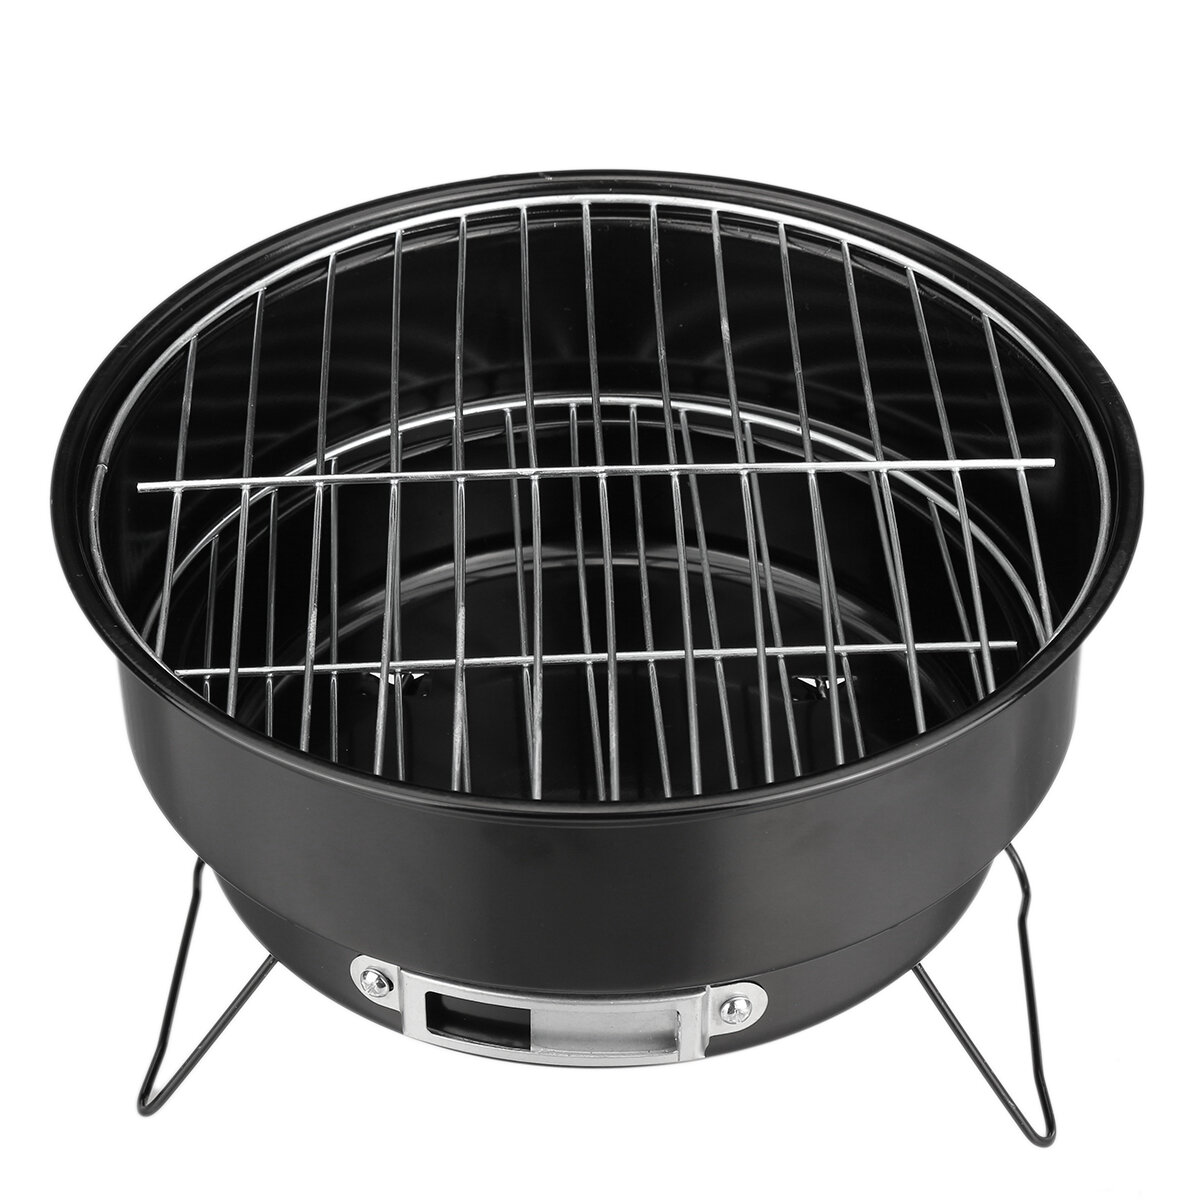 Kerek barbecue grill összecsukható rozsdamentes acél grill hordozható szabadtéri kemping barbecue grill